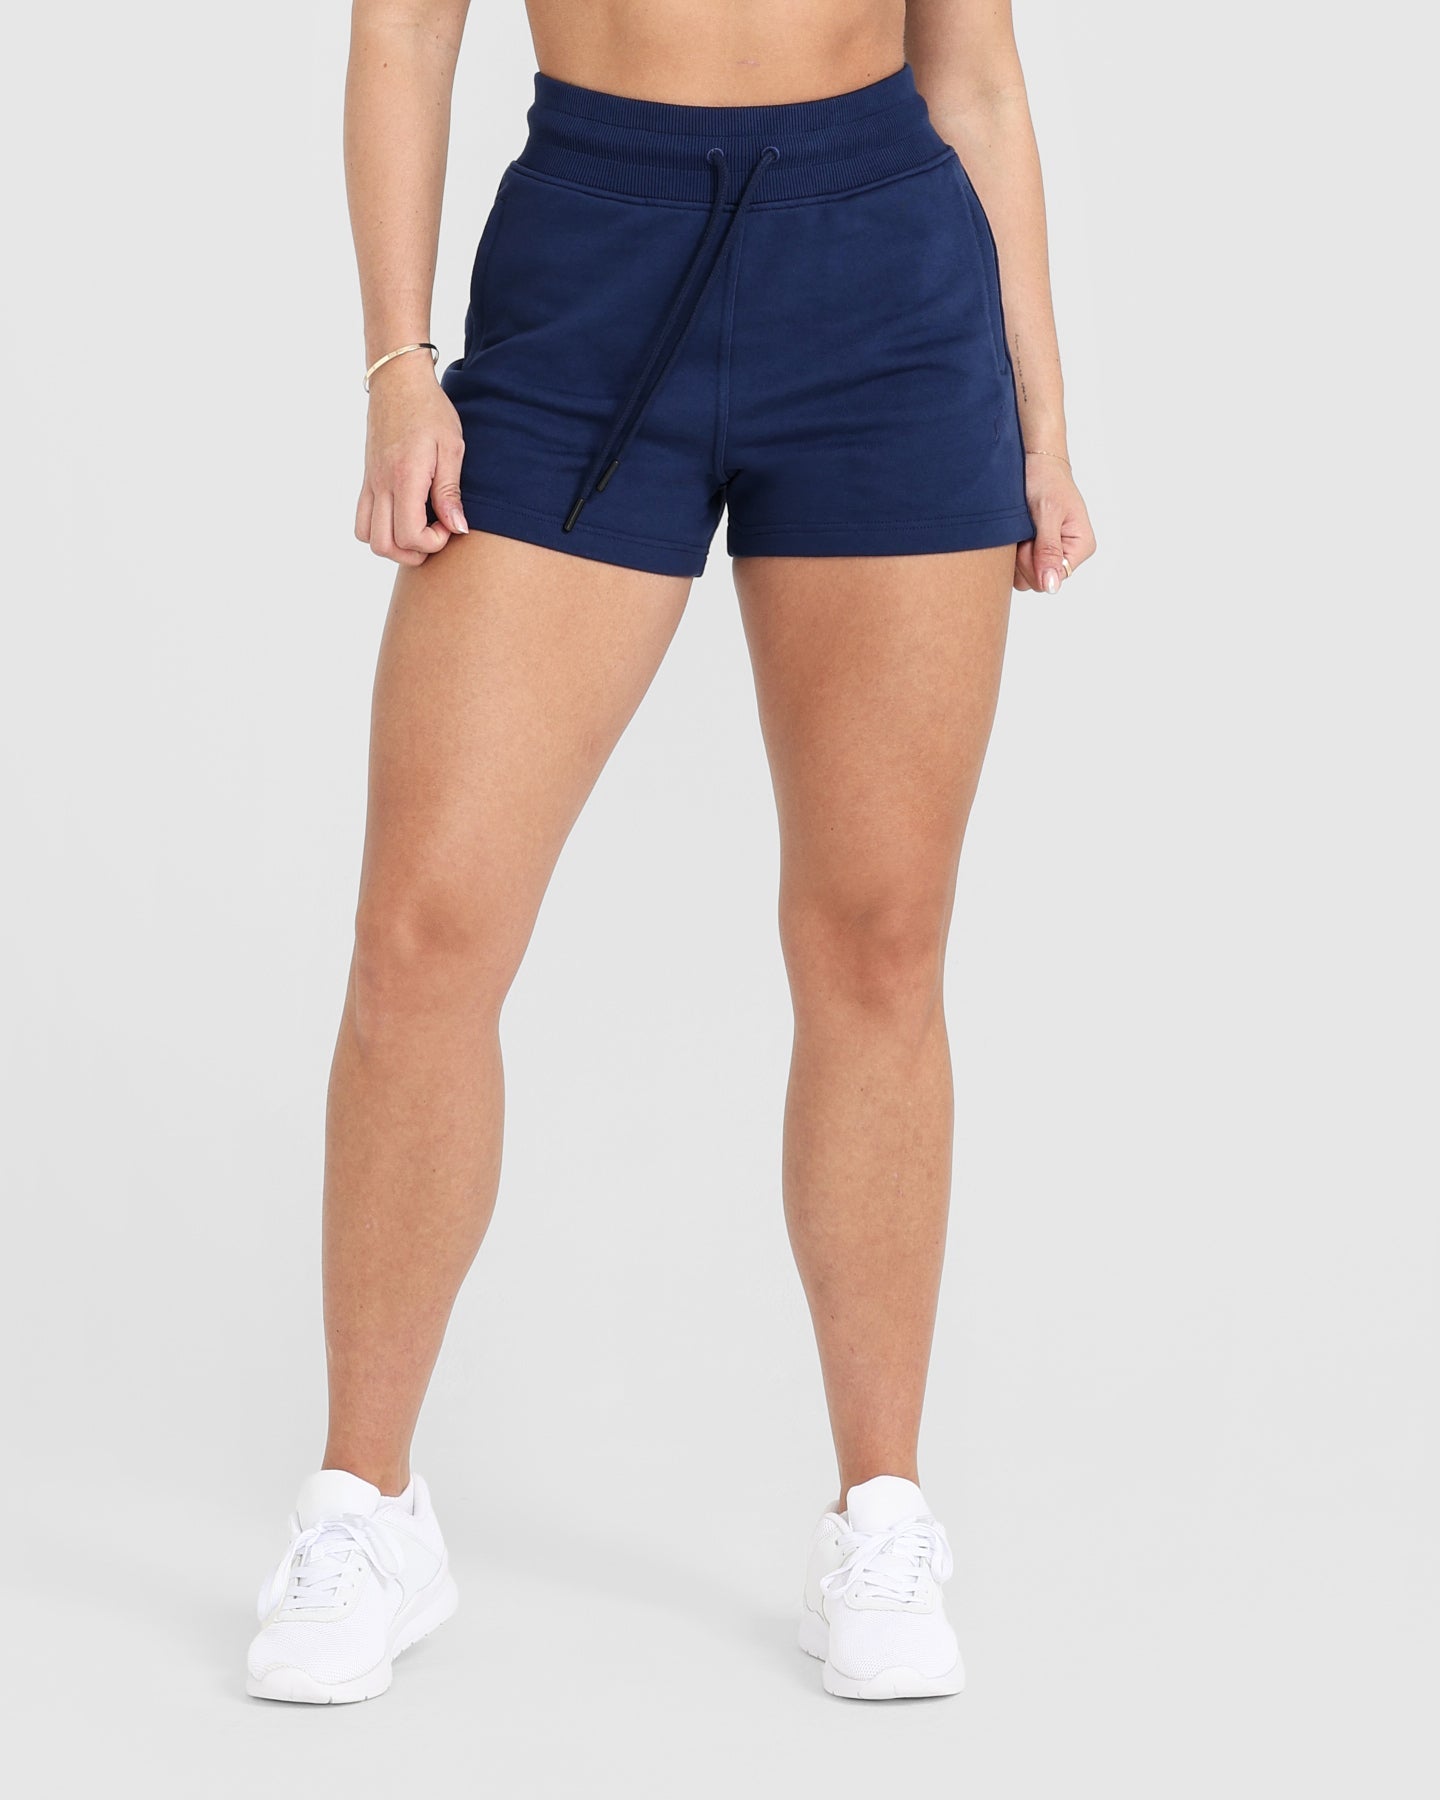 Dark Blue Shorts Women's - Midnight | Oner Active